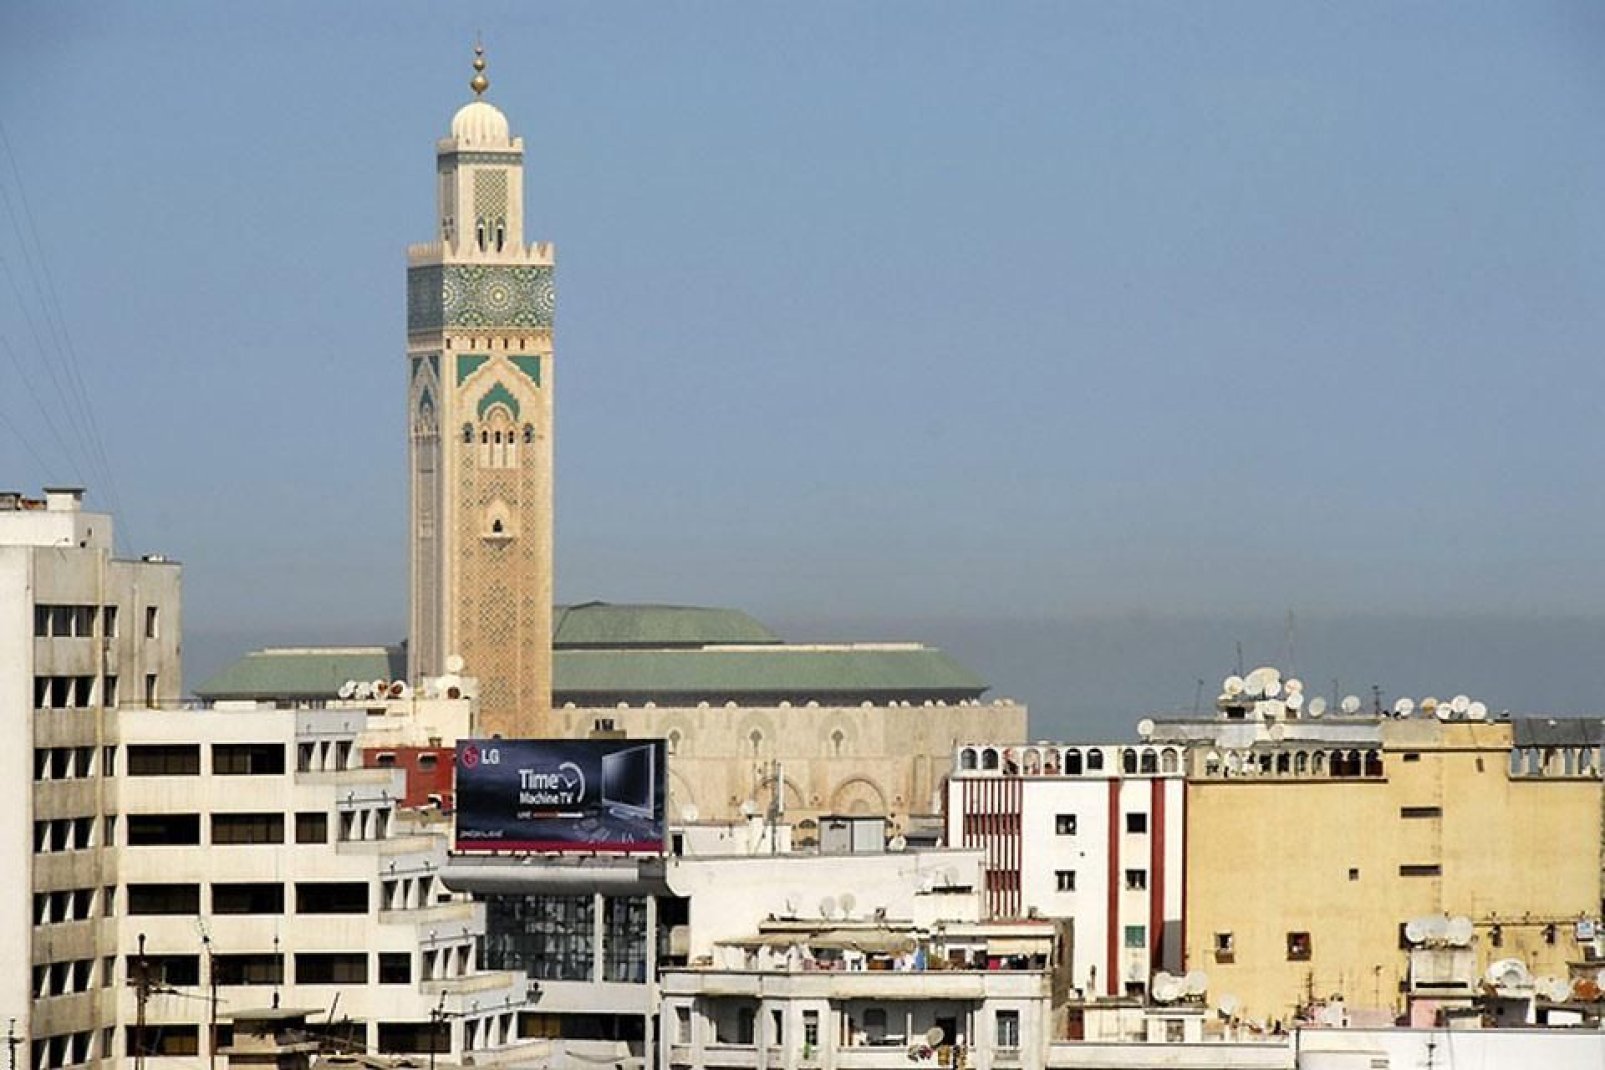 Der Imam lädt über den Ruf des Muezzins zum Gebet ein, was durch die Höhe des Minaretts überall gut hörbar ist.